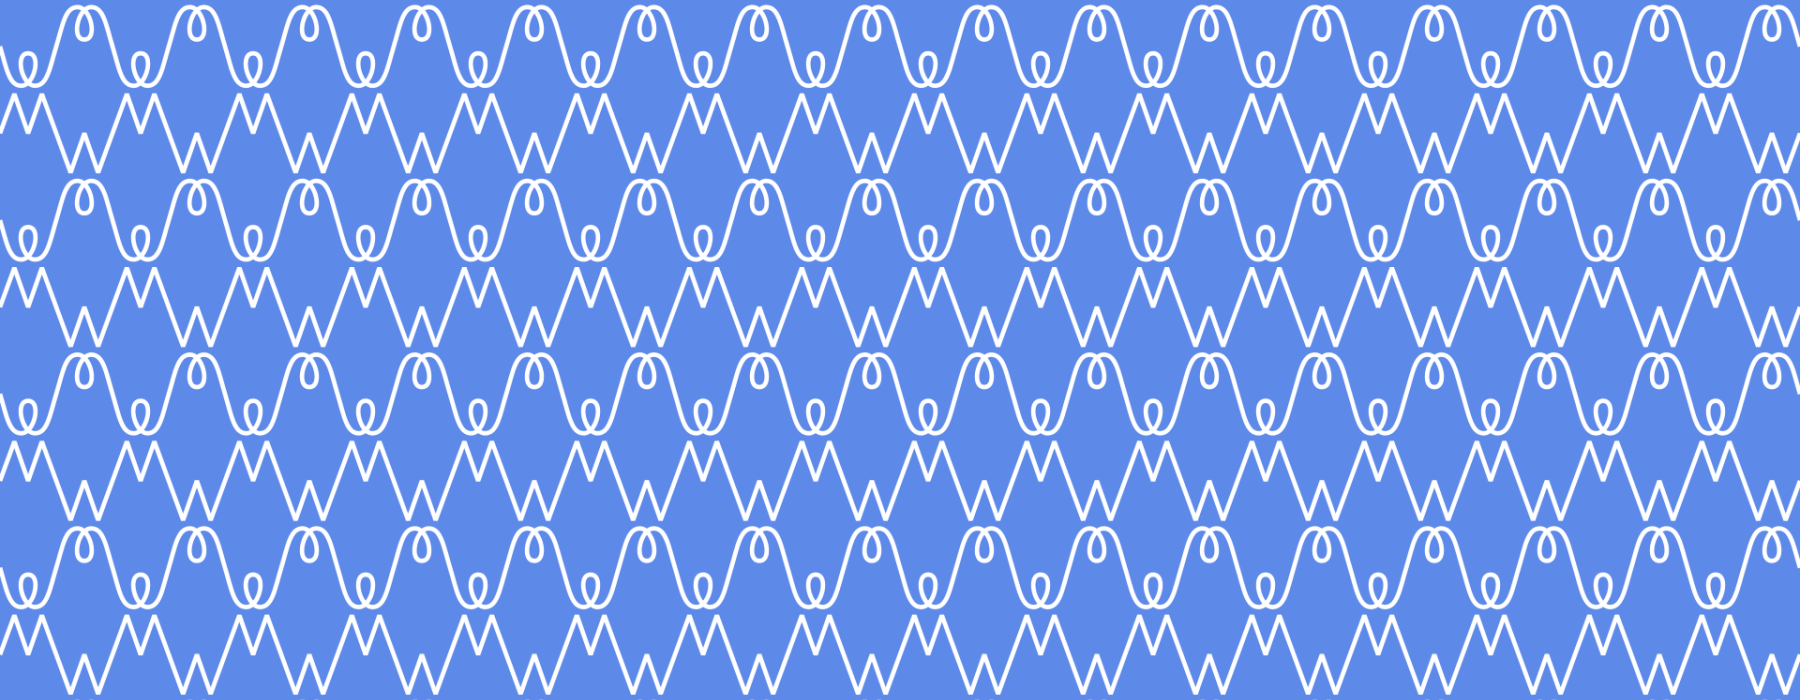 WM pattern Blauw